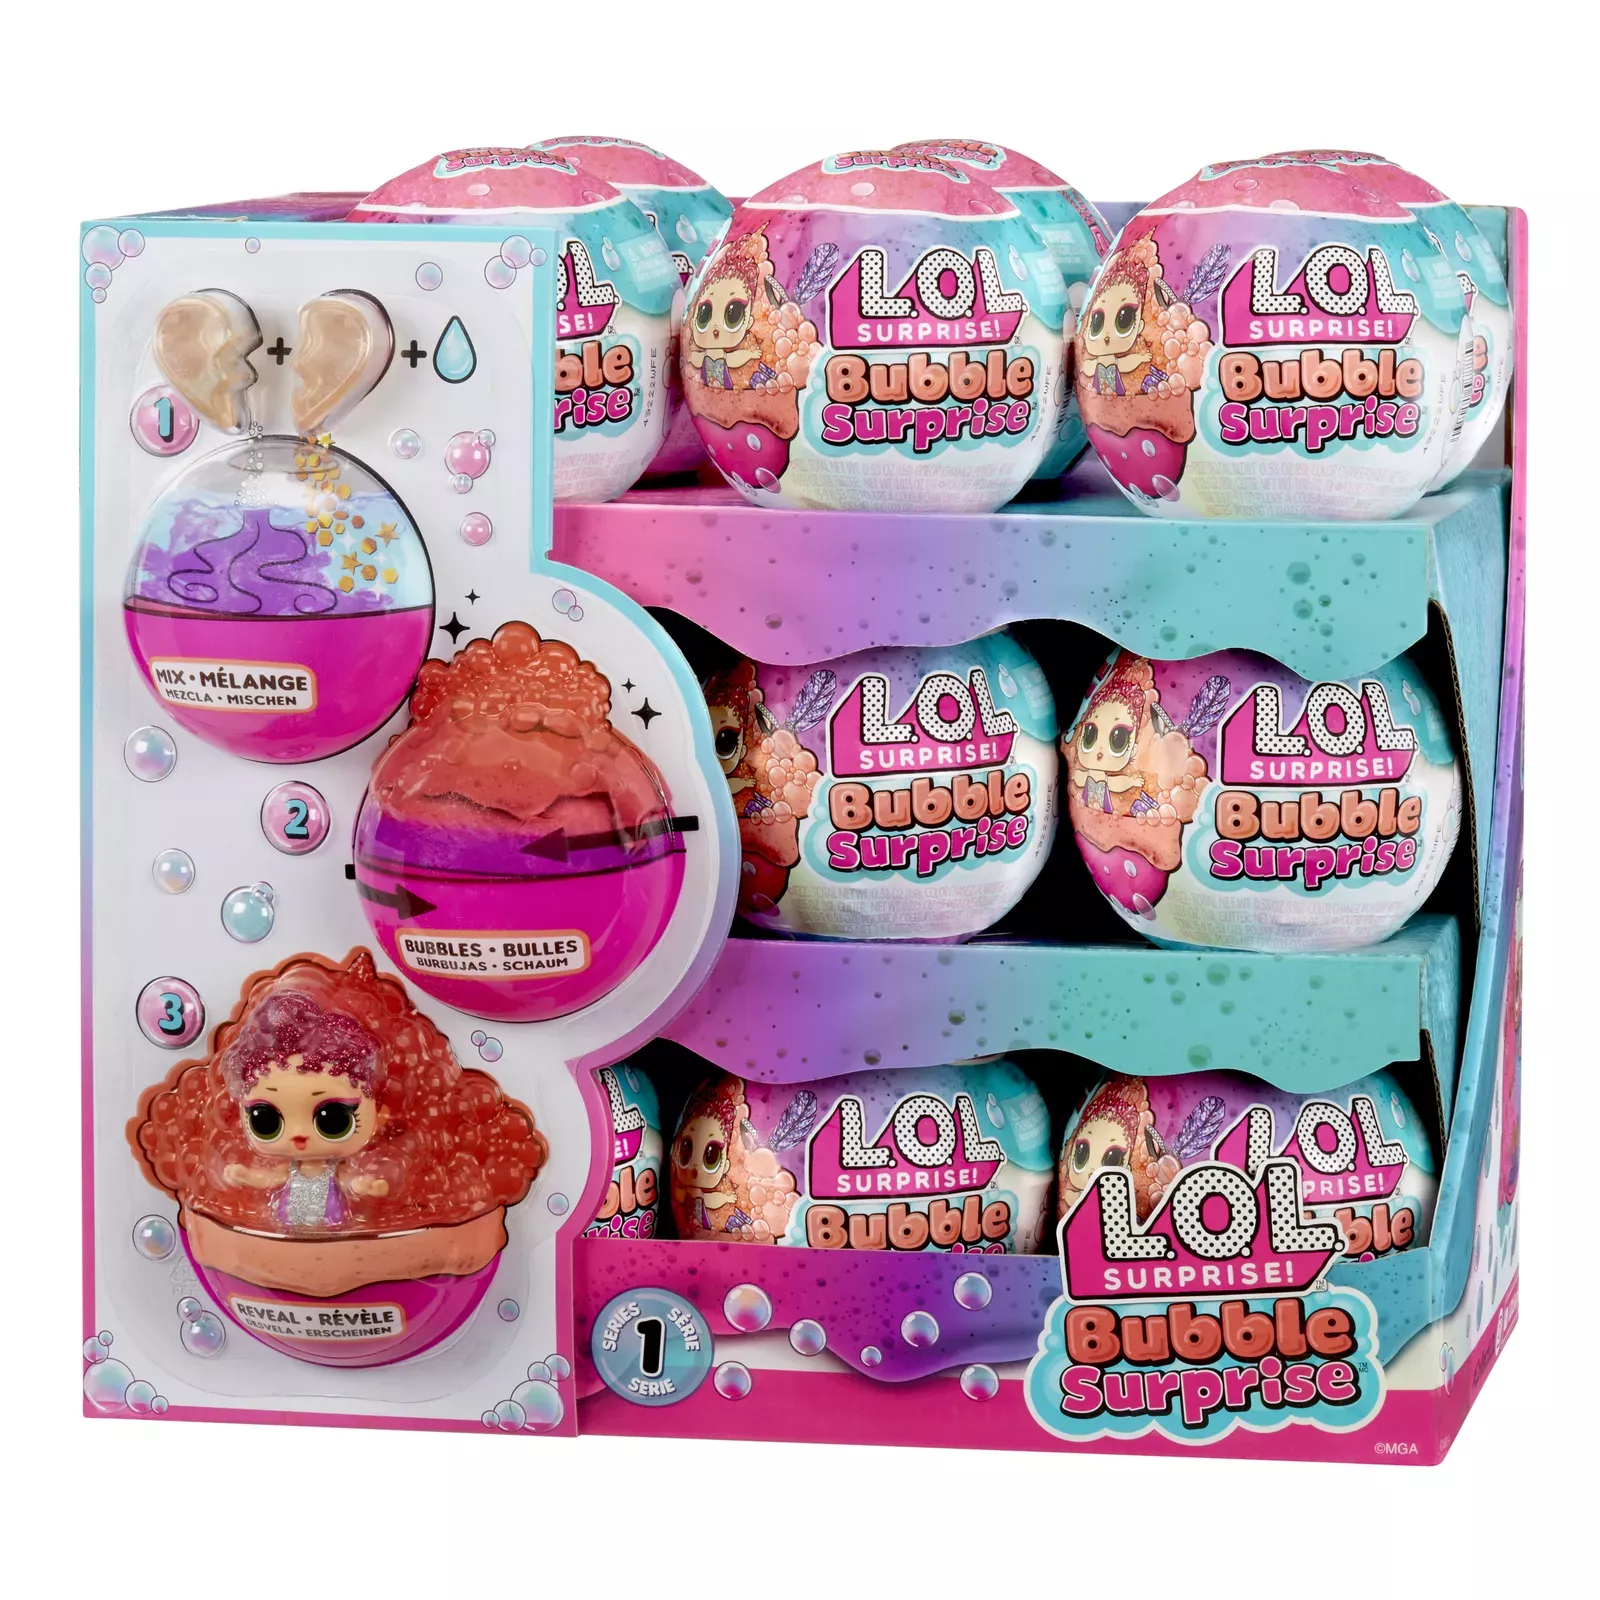  L.O.L. Surprise! Bubble Surprise Dolls - Collectible